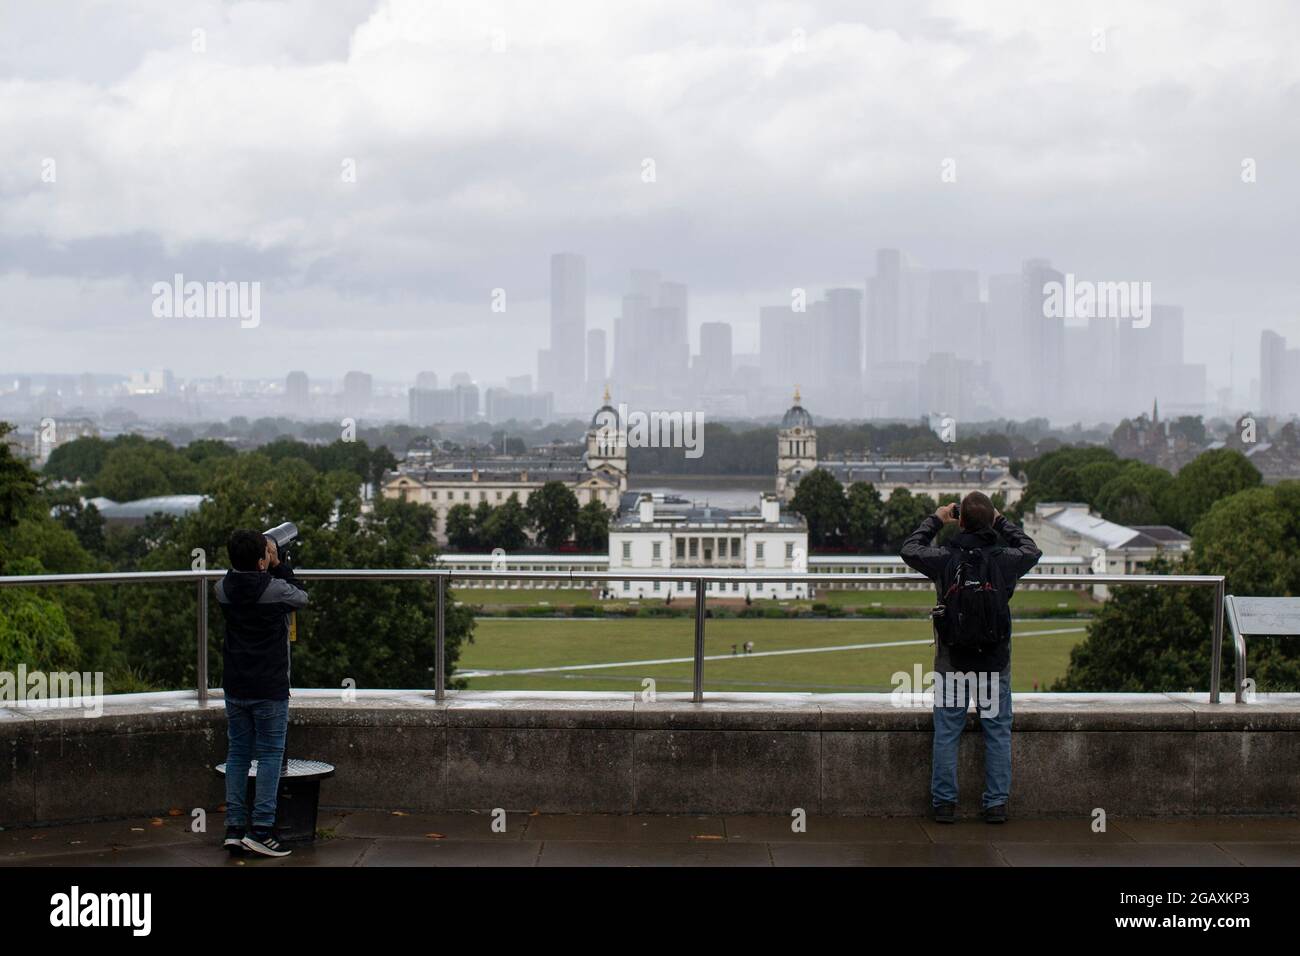 30/07/2021. London, Großbritannien. Ein Mitglied der Öffentlichkeit blickt während eines Regensturms im Greenwich Park im Südosten Londons auf Canary Wharf. Phot Stockfoto